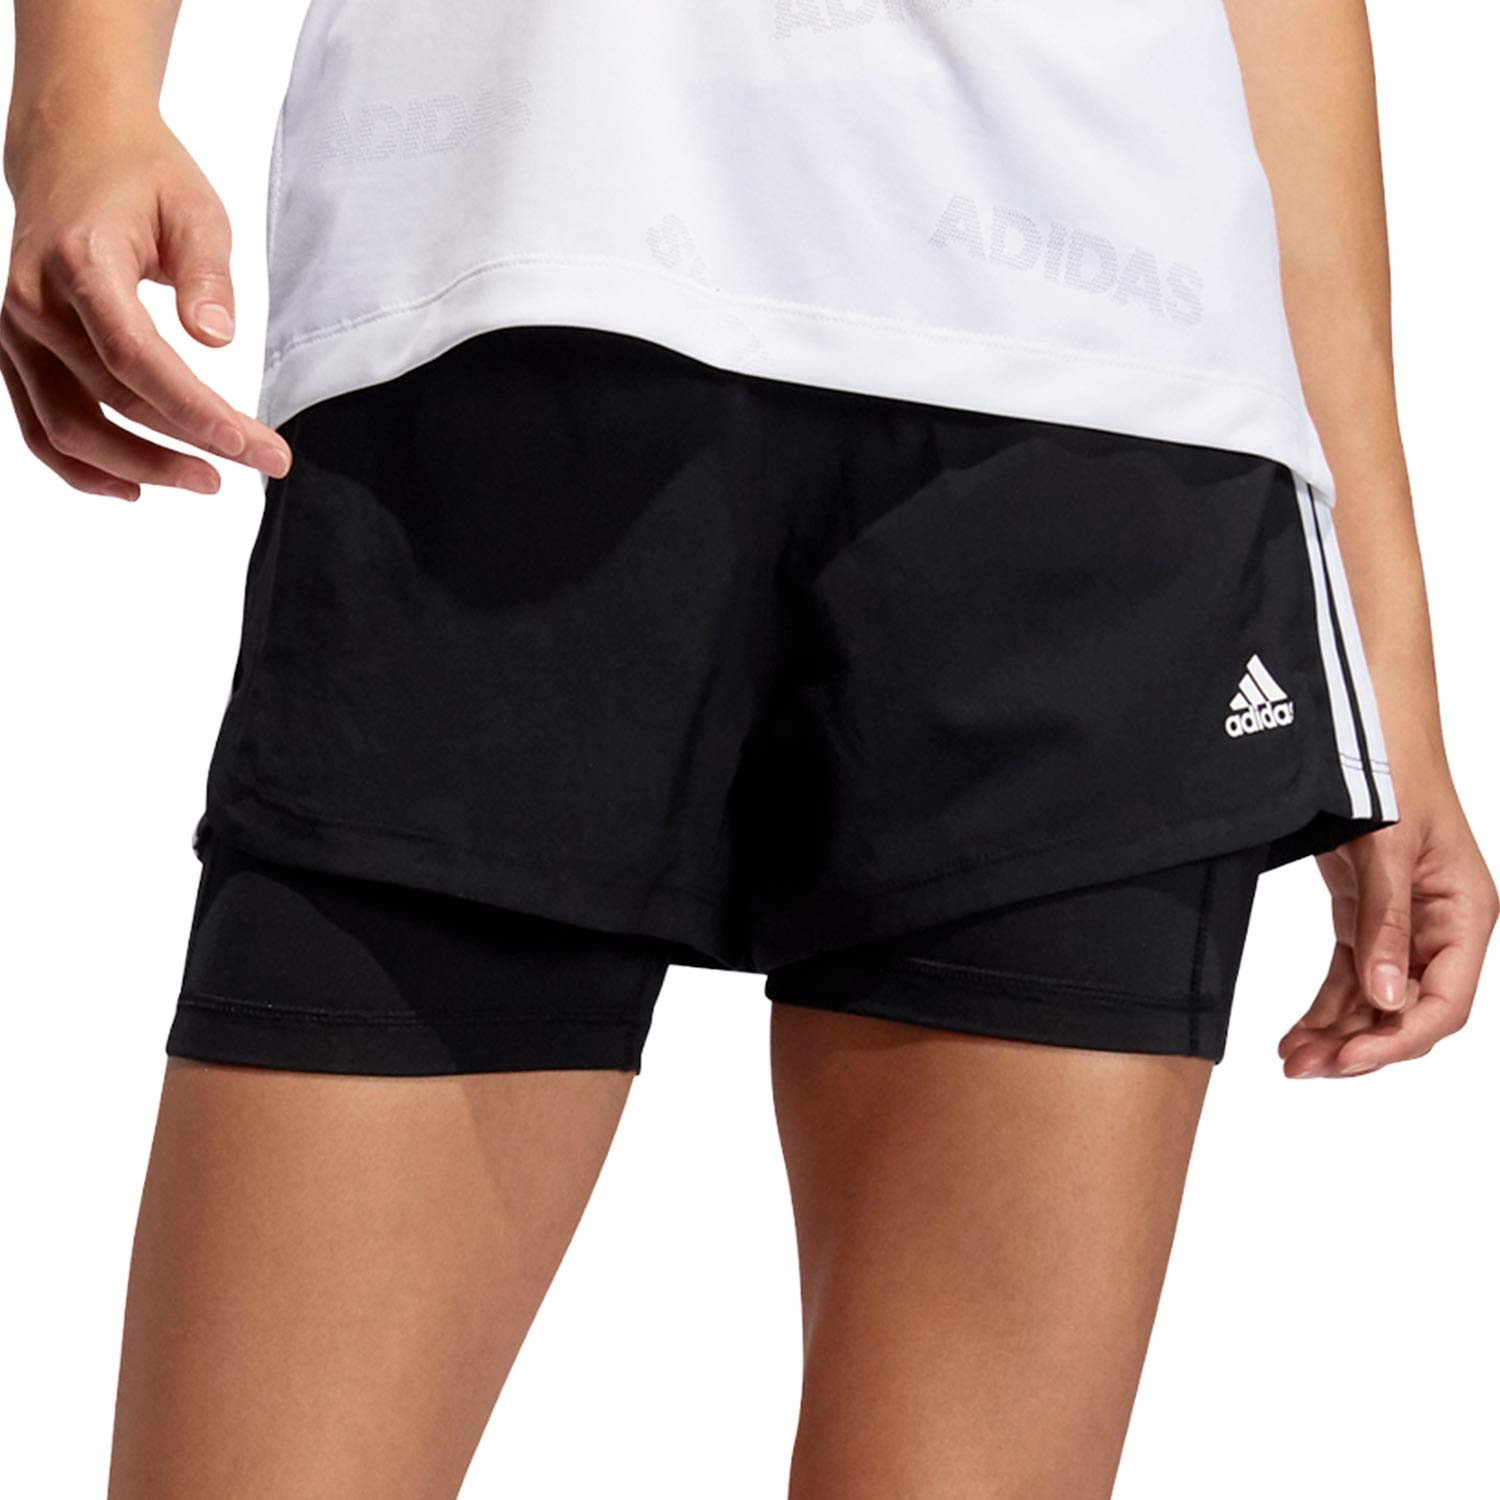 Short con malla adidas Stripes 2 en 1 mujer | futbolmania